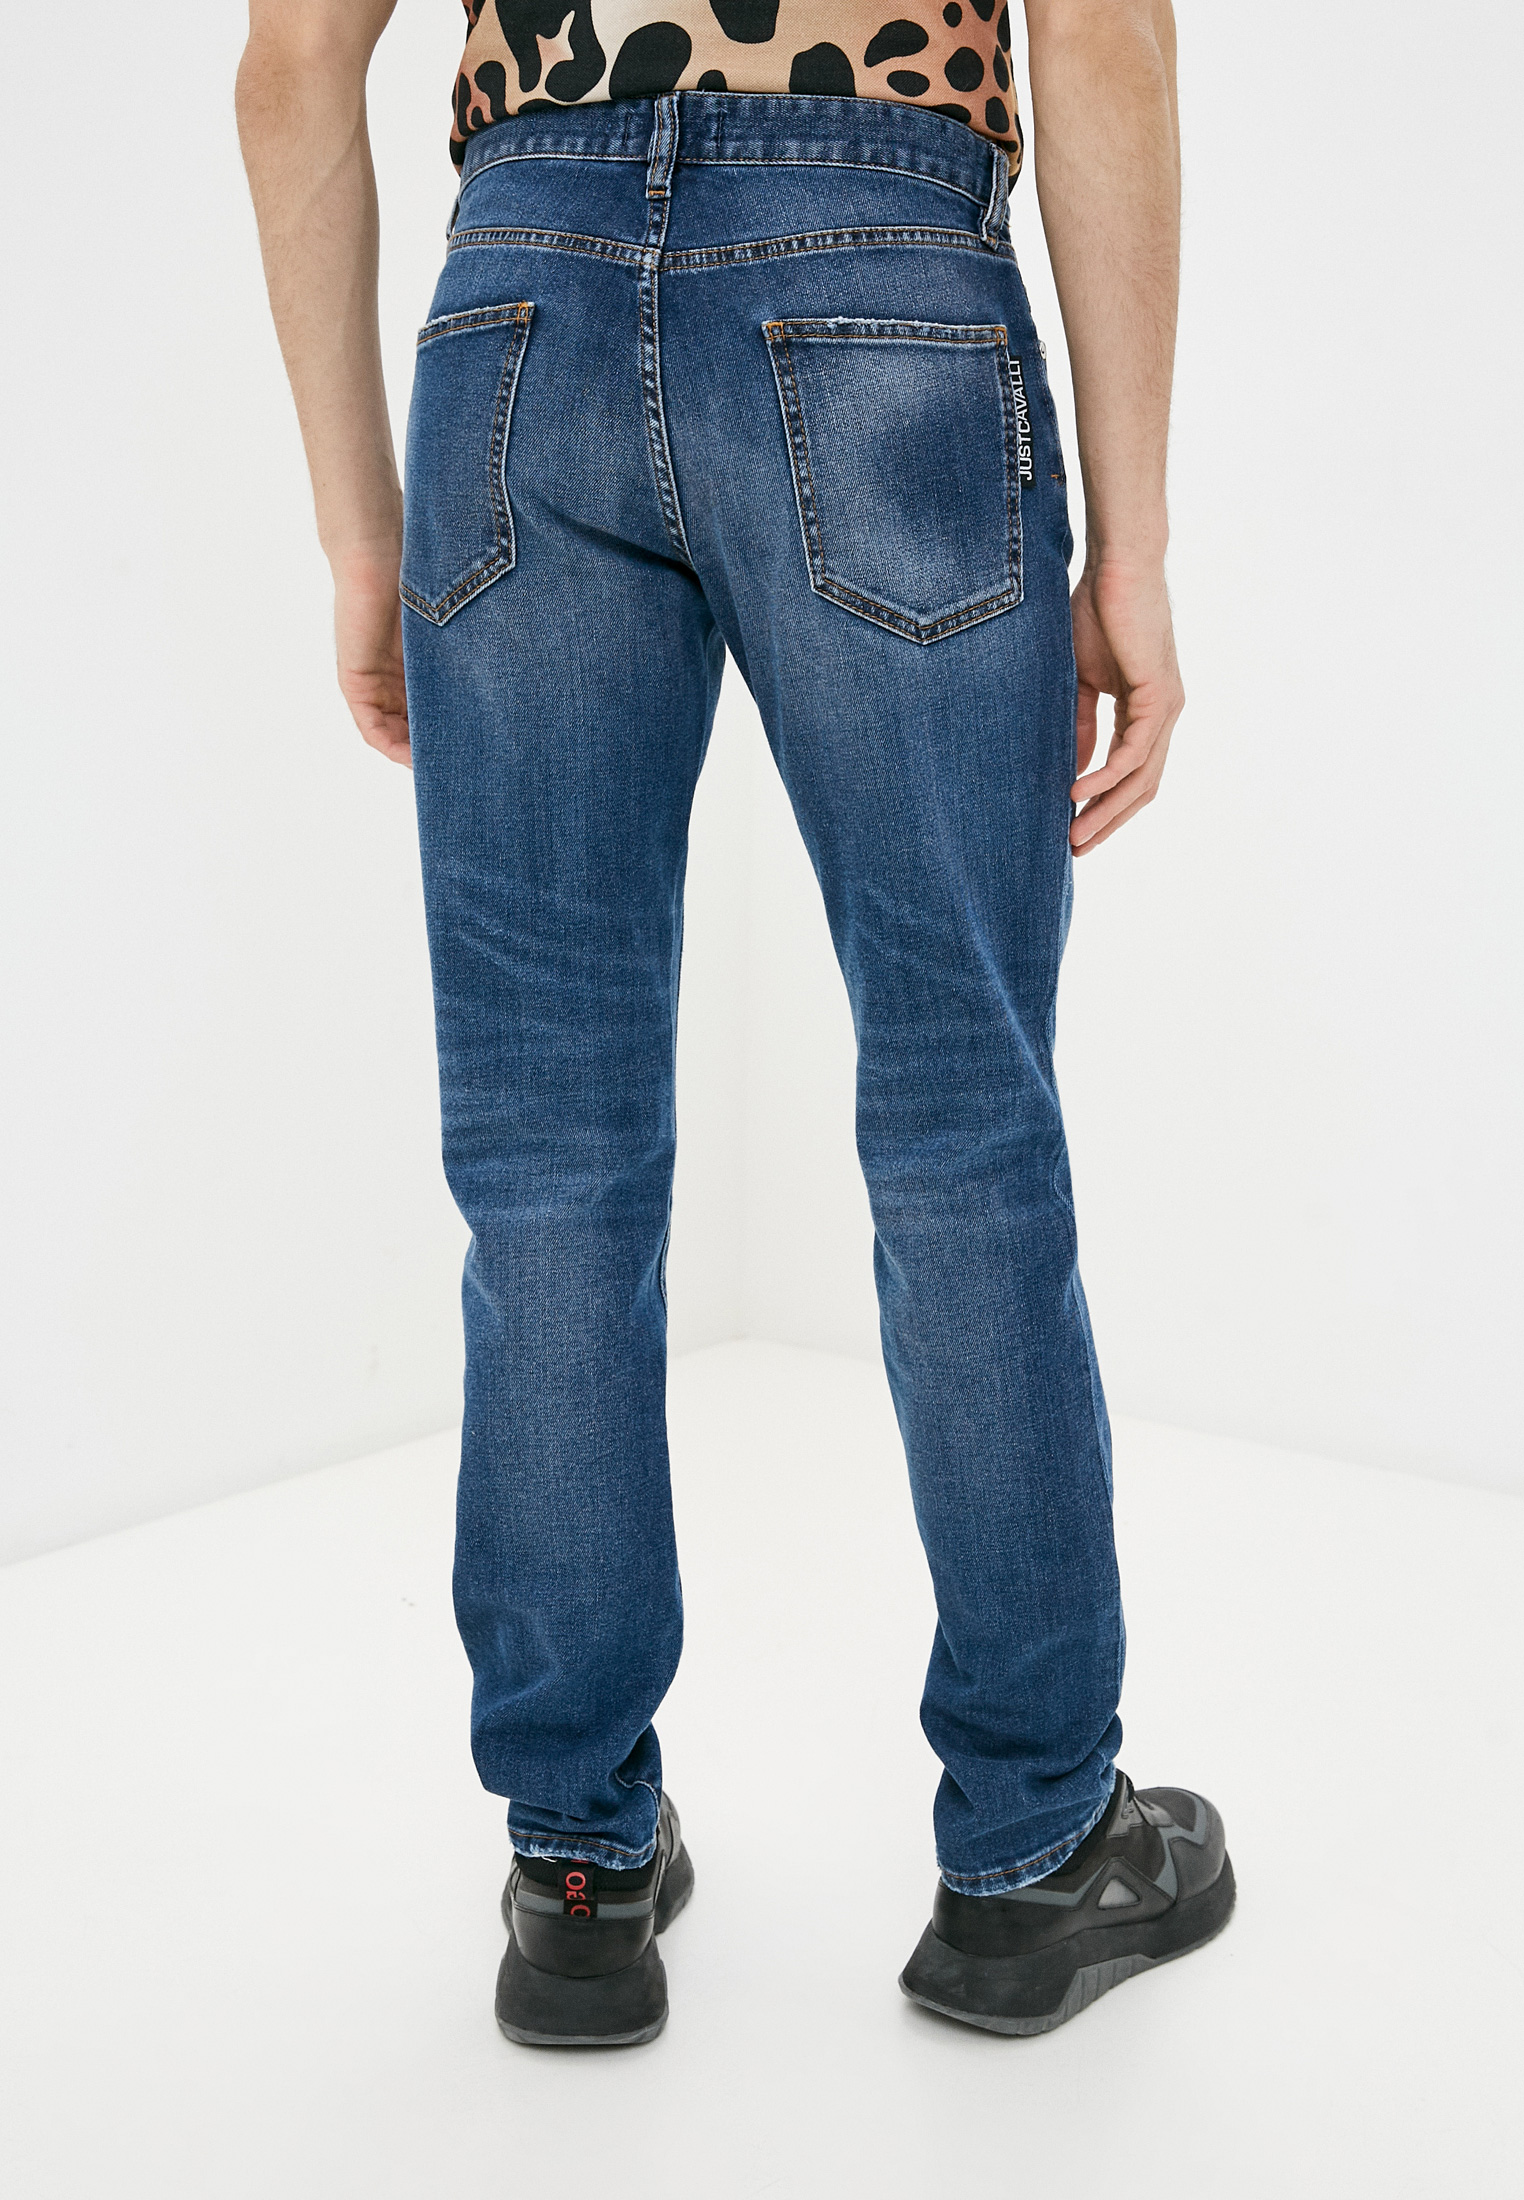 Зауженные джинсы Just Cavalli (Джаст Кавалли) S01LA0141N31882: изображение 4